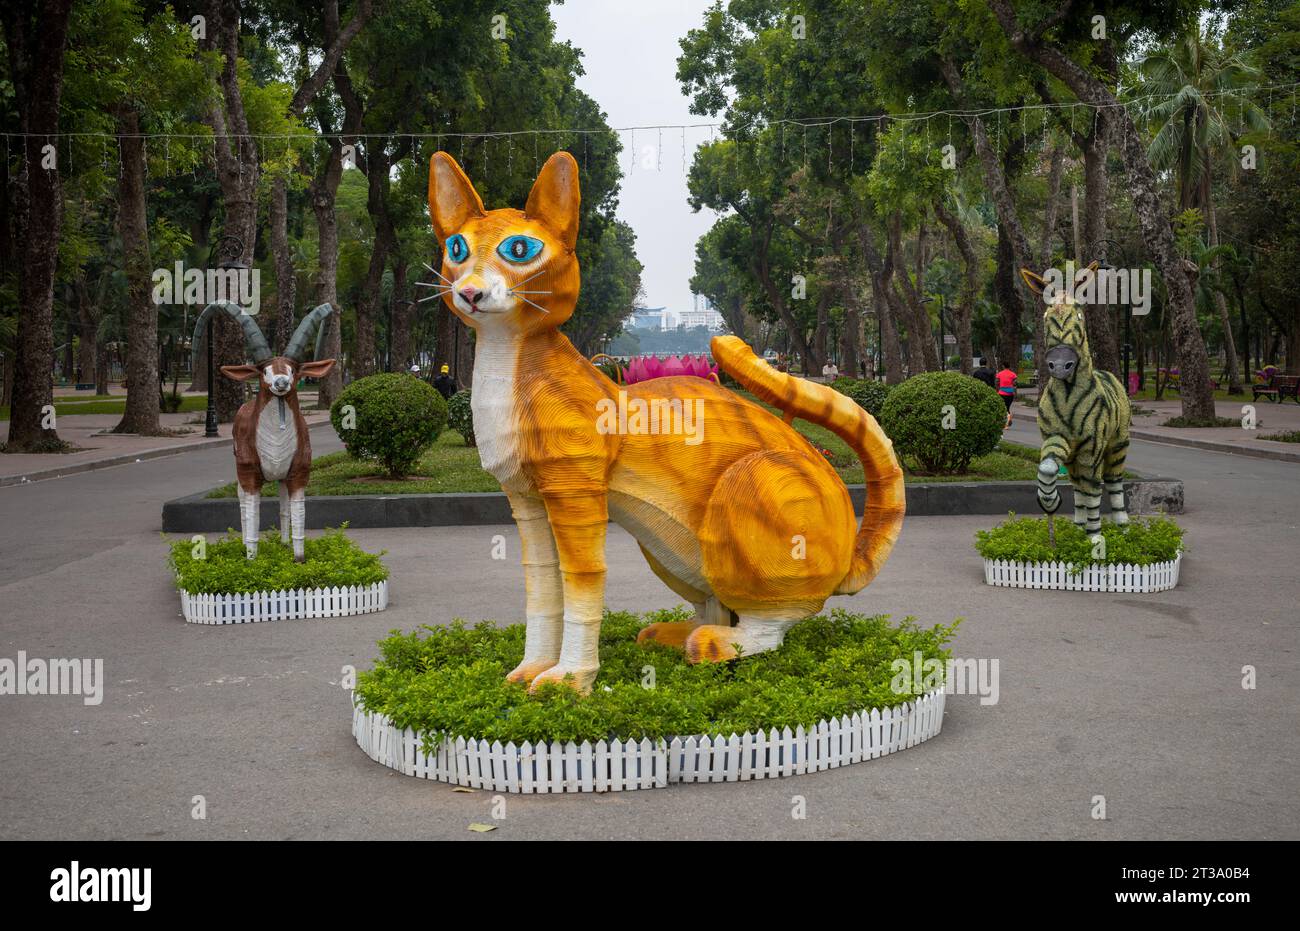 Un grande gatto modello giallo con occhi blu in mostra nel Parco della riunificazione di Hanoi, in Vietnam, per dare il benvenuto al nuovo anno lunare del gatto nel gennaio 2023 Foto Stock